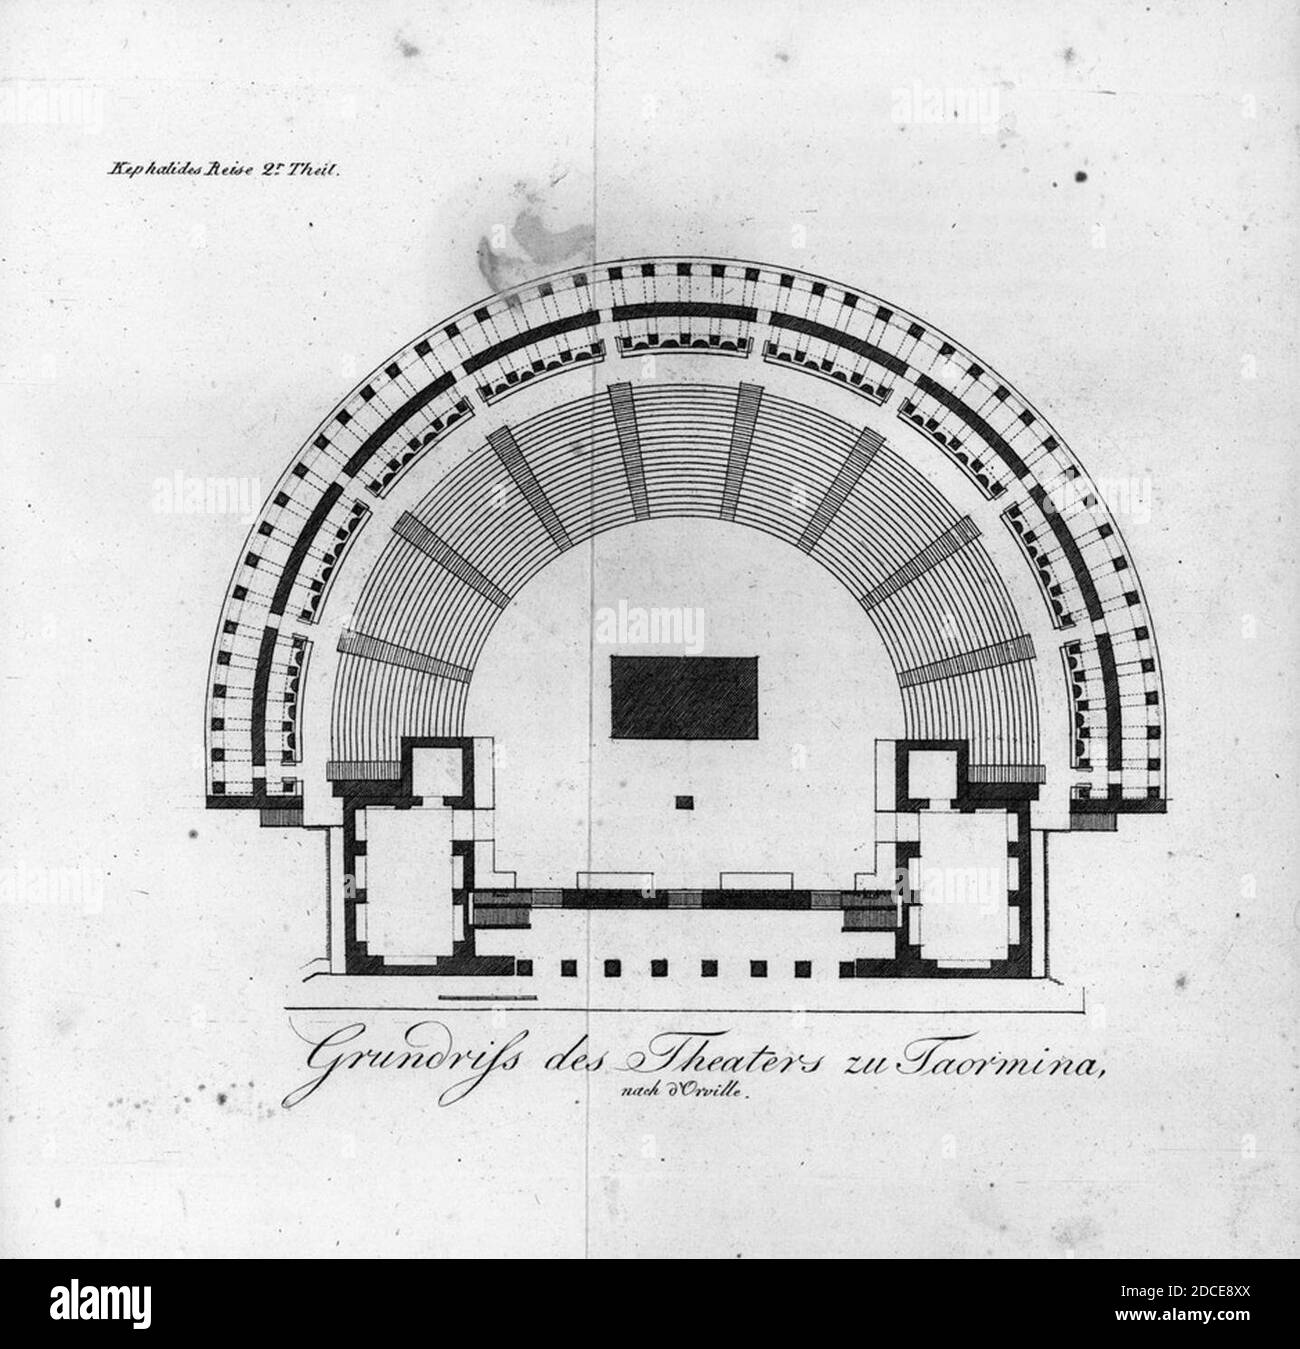 Kephalides, A. W - Teatro Greco, Taormina (1822). Stock Photo